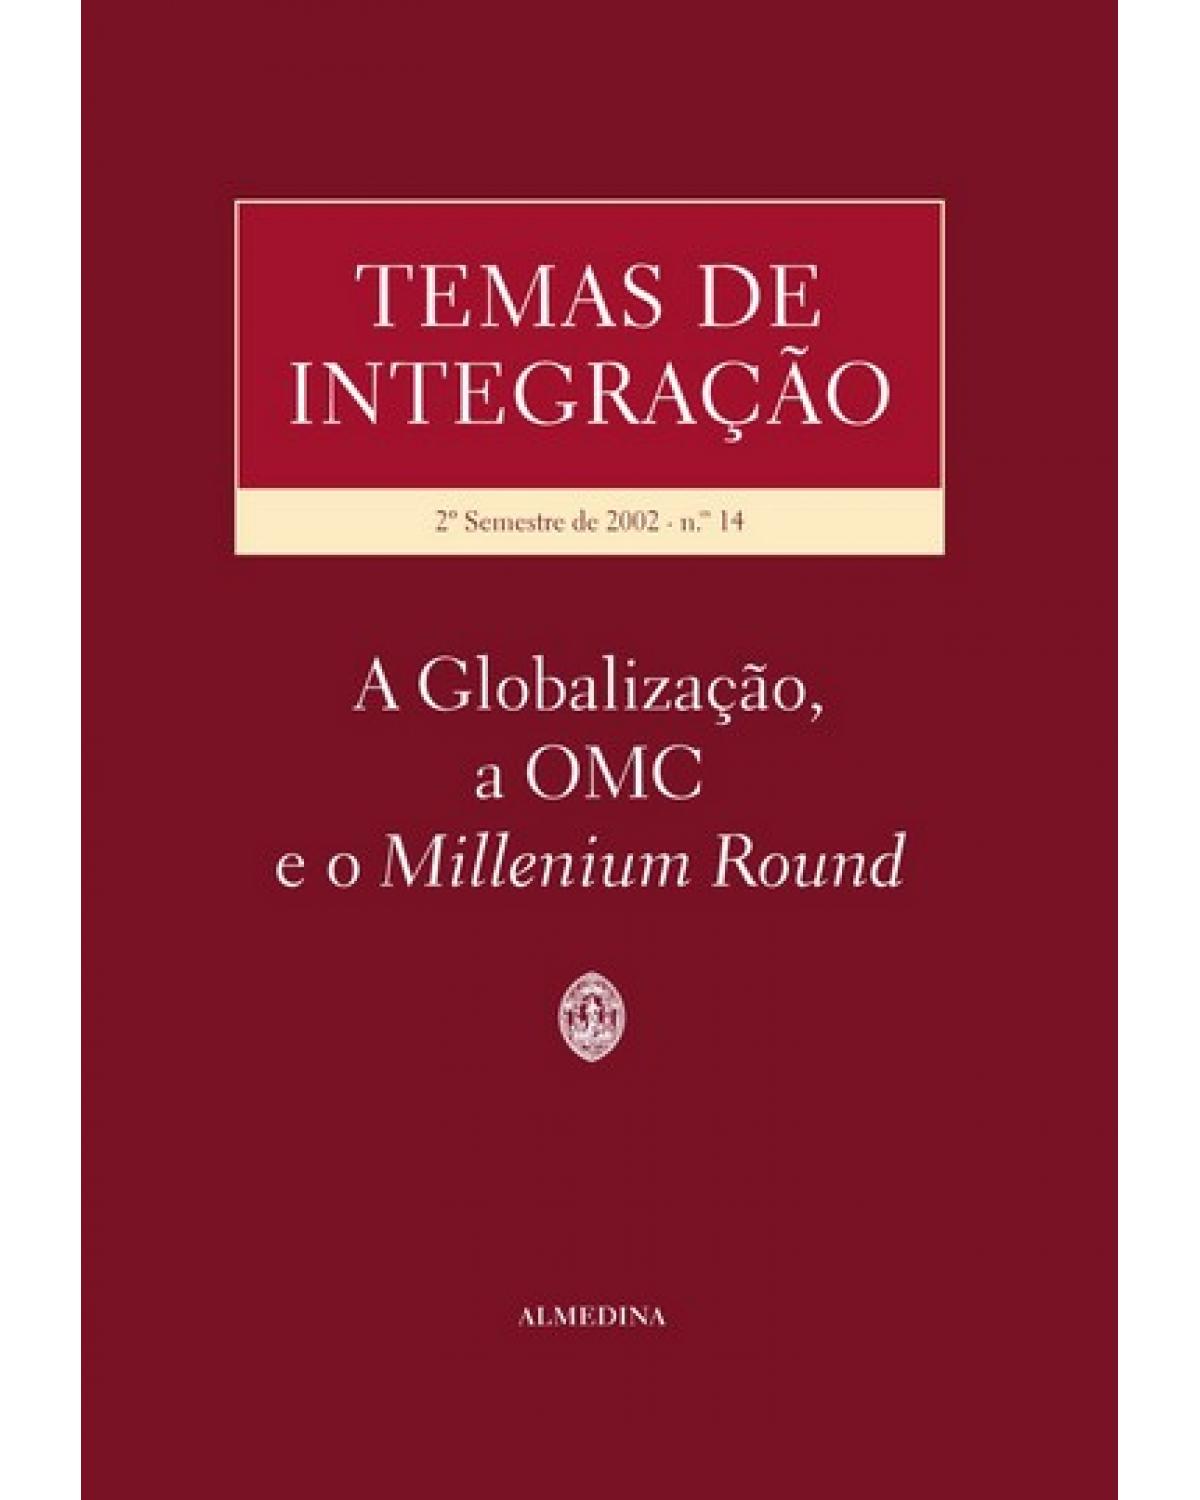 Temas de integração - Volume 14: 2º semestre de 2002 - A globalização, a OMC e o millenium round - 1ª Edição | 2003